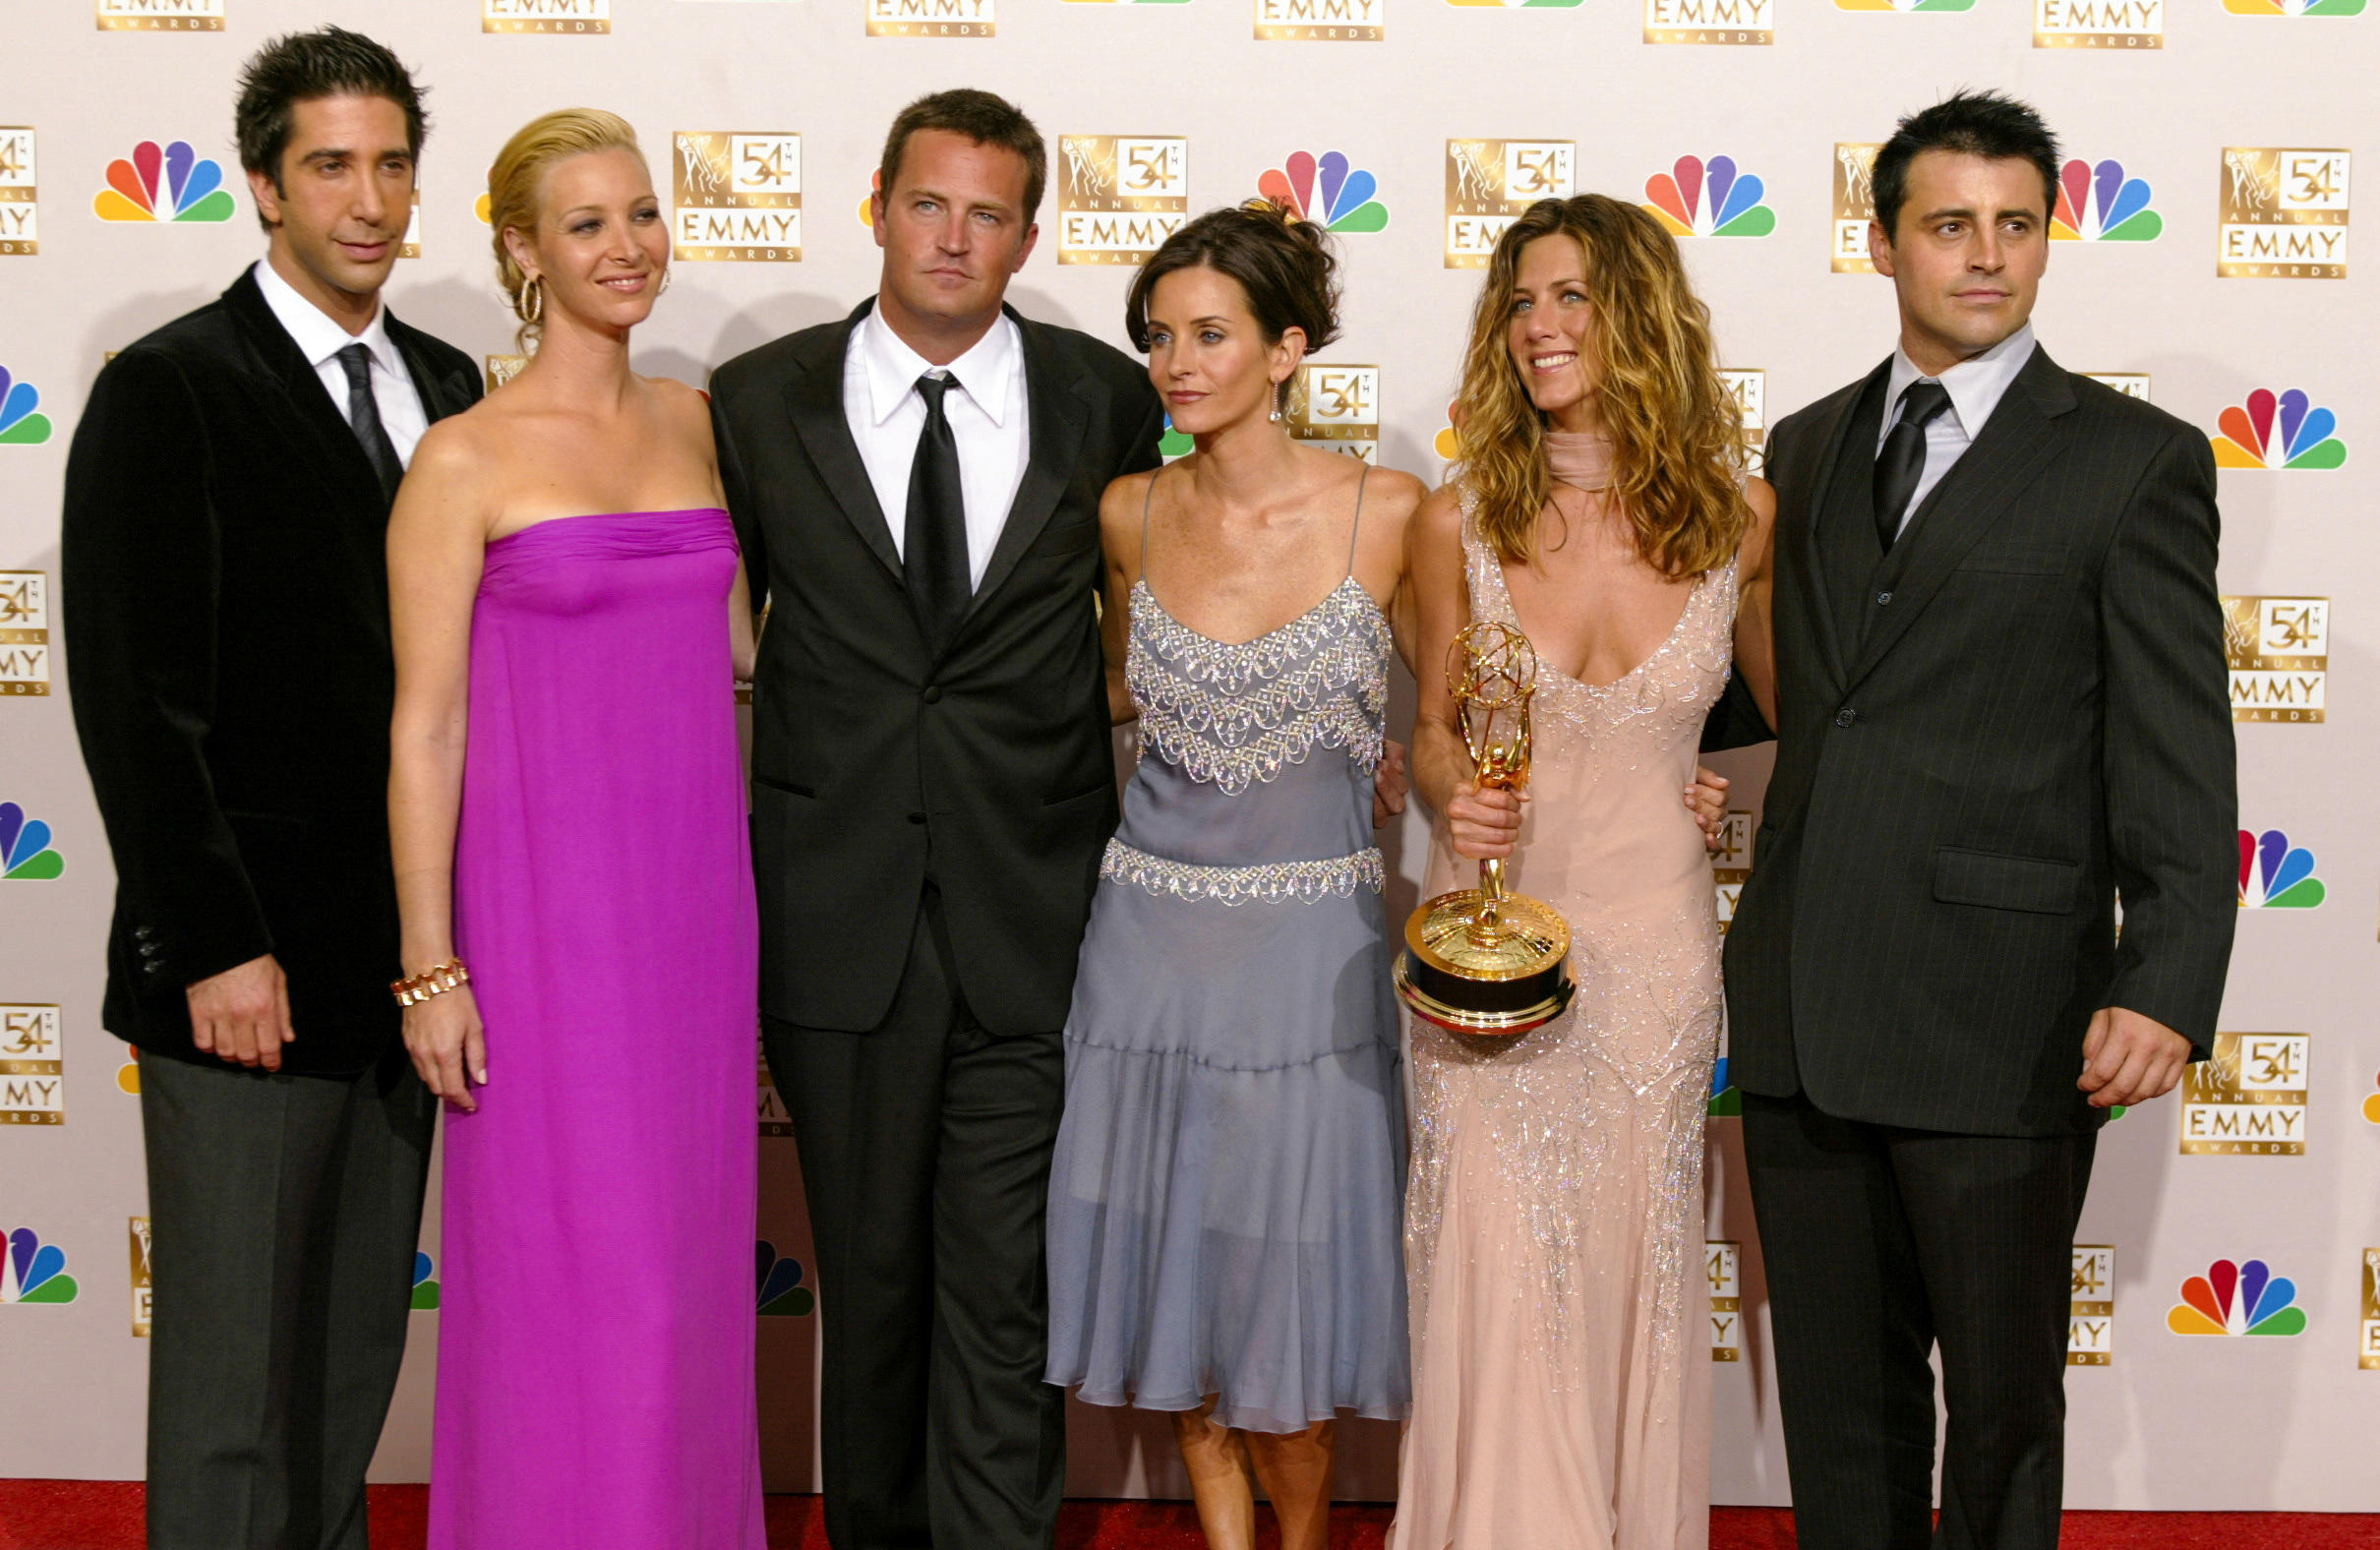 David Schwimmer, Lisa Kudrow, Matthew Perry, Courteney Cox Arquette, Jennifer Aniston et Matt LeBlanc de « Friends » lors de la 54e Emmy Awards annuelle à Los Angeles, aux États-Unis, le 22 septembre 2002. REUTERS/Mike Blake